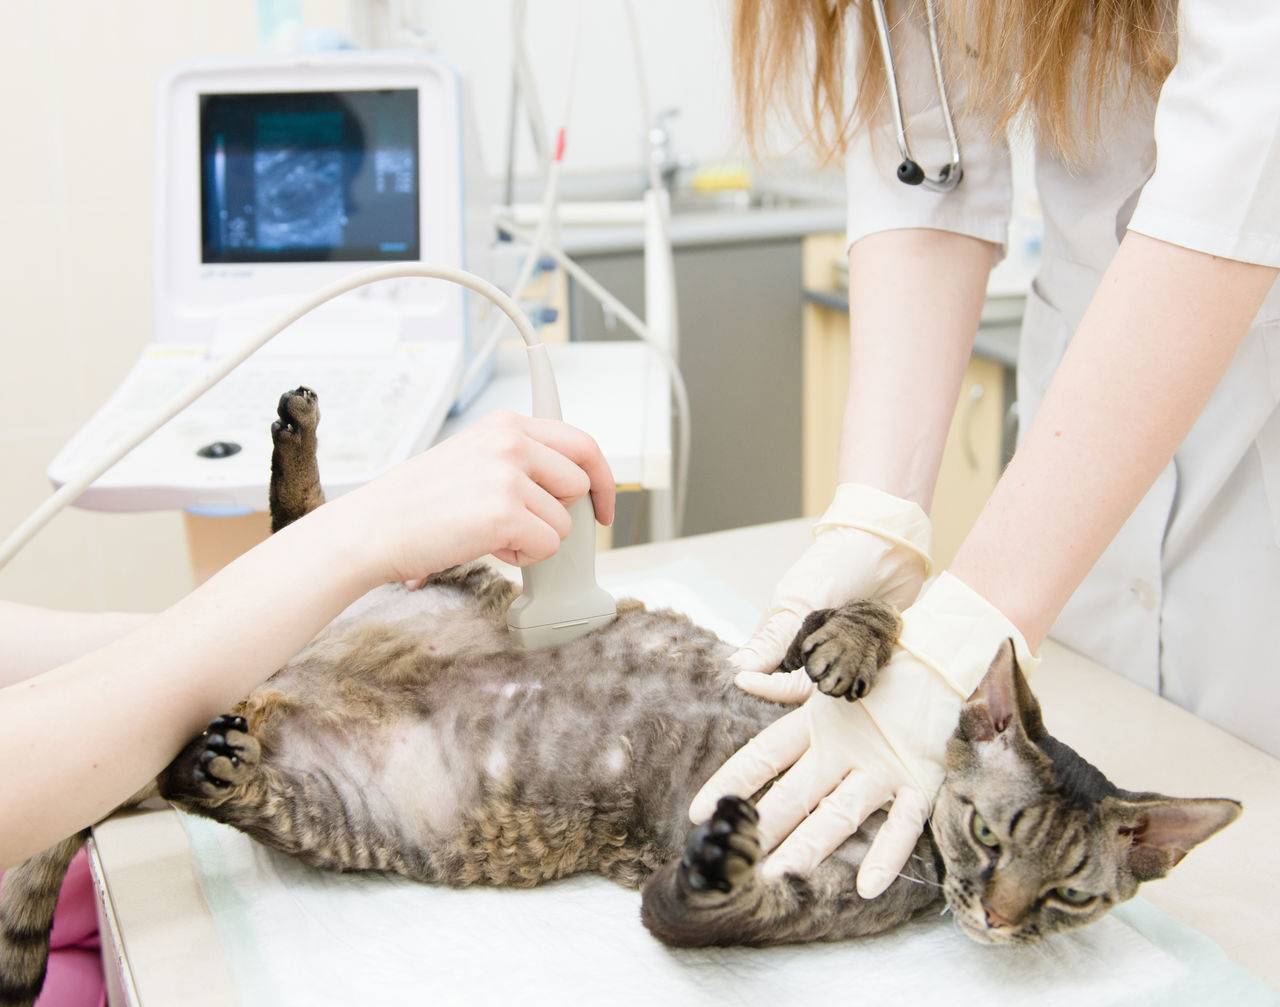 Мастопатия у кошек: причины, симптомы, лечение
мастопатия у кошек: причины, симптомы, лечение